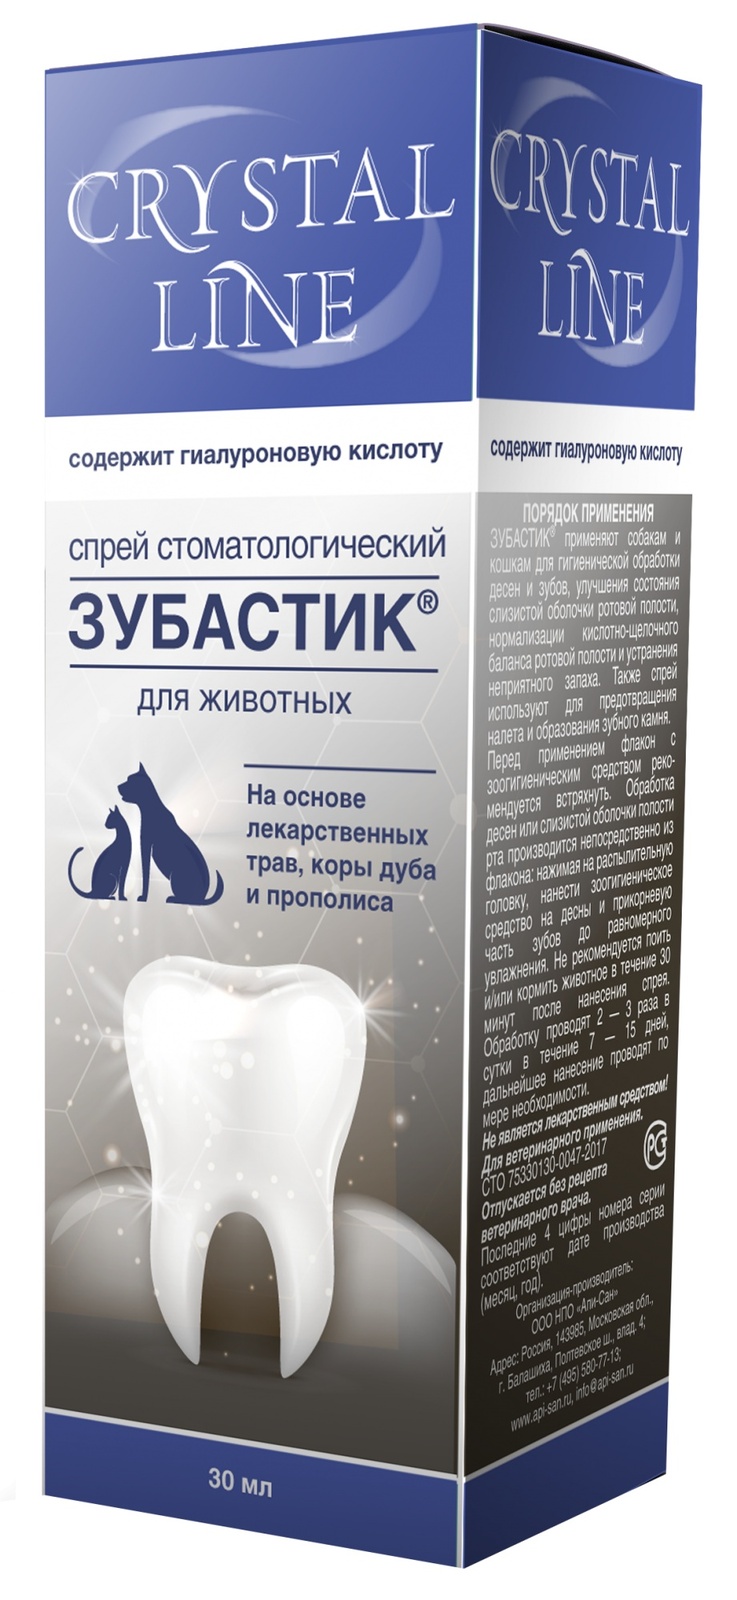 цена Apicenna Apicenna зубастик спрей для чистки зубов Crystal line (30 г)